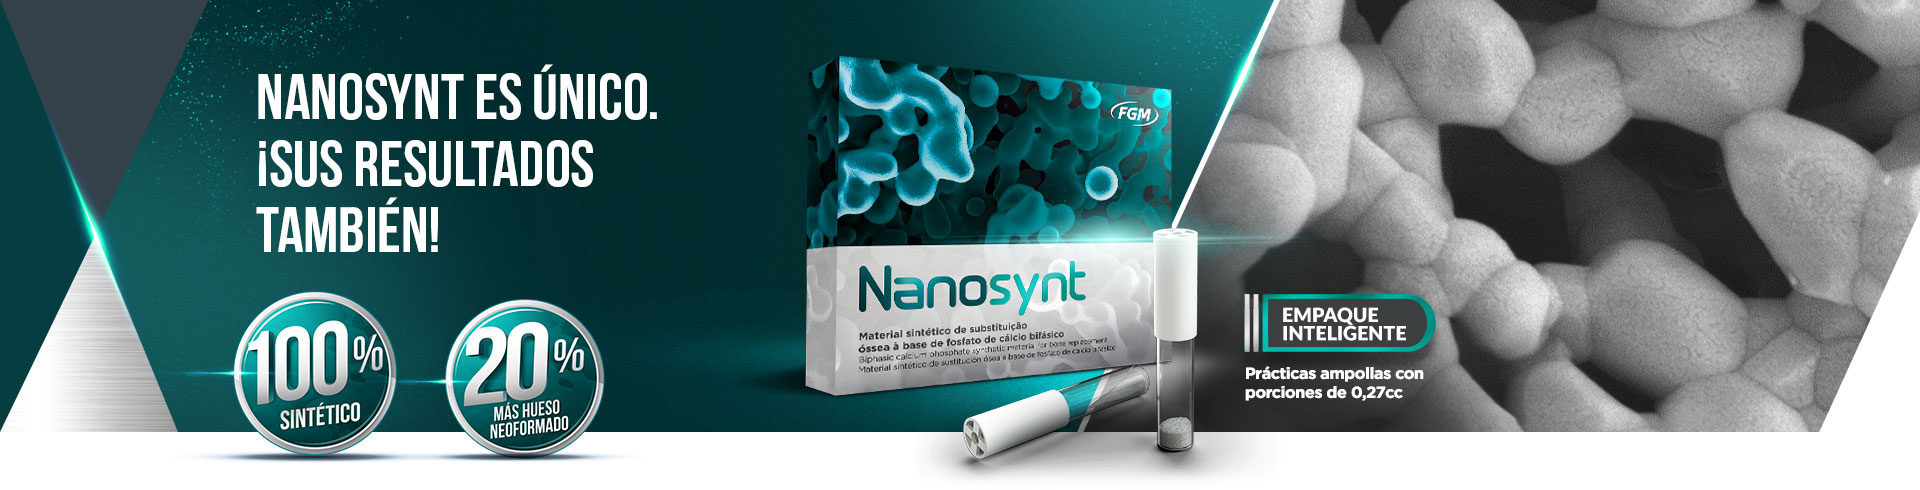 Banner Desk Nanosynt Es